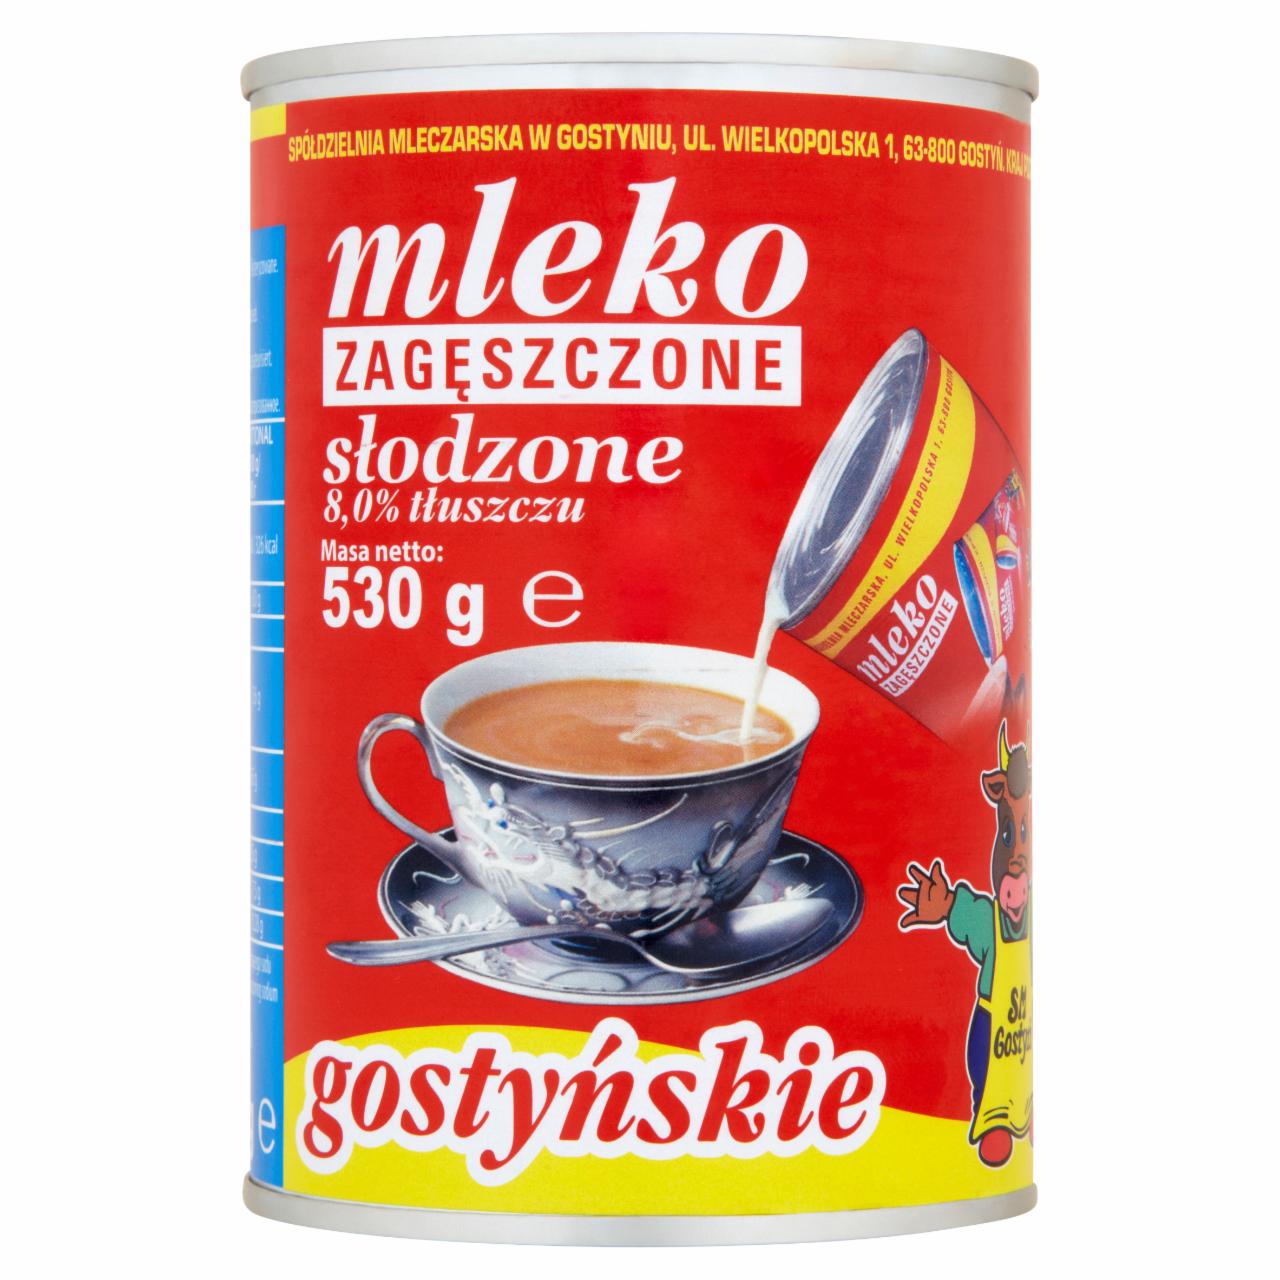 Zdjęcia - SM Gostyń Mleko gostyńskie zagęszczone słodzone 8,0% 530 g